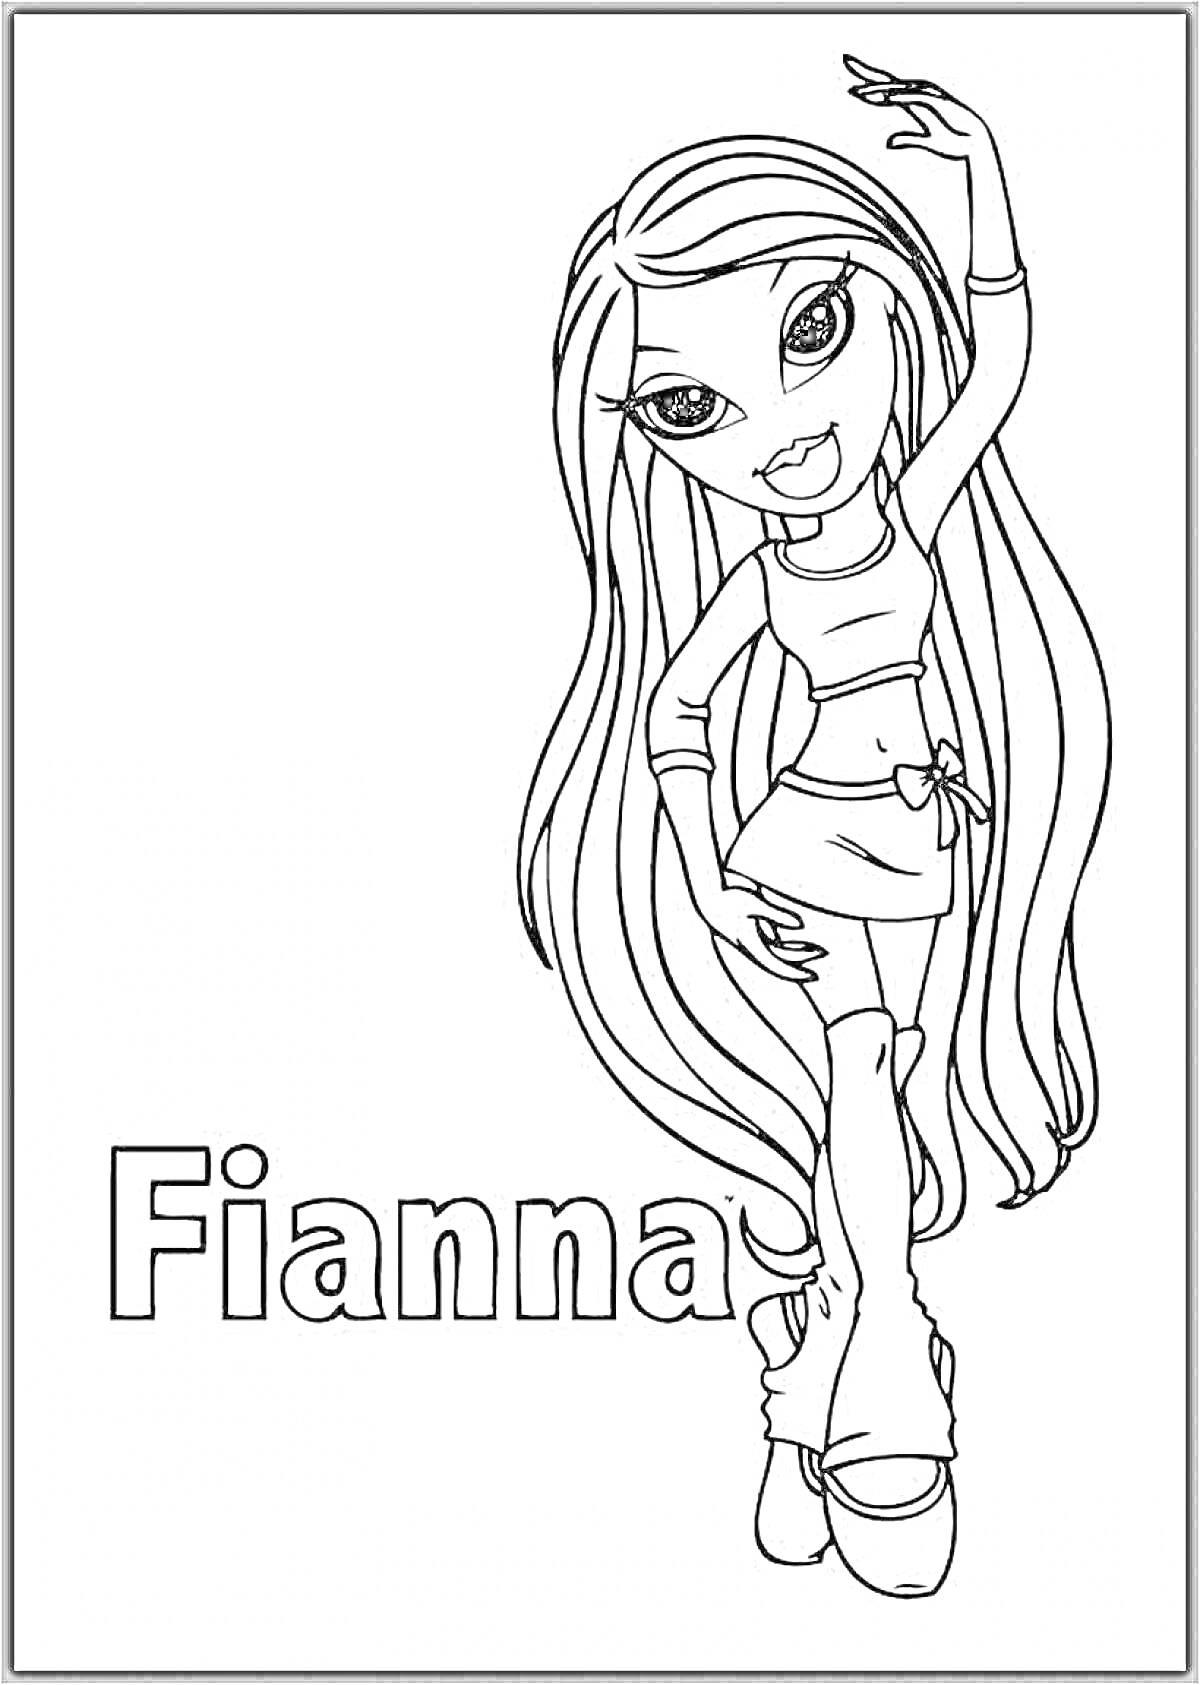 Раскраска Fianna из Братц с длинными волосами, стоящая с поднятой рукой